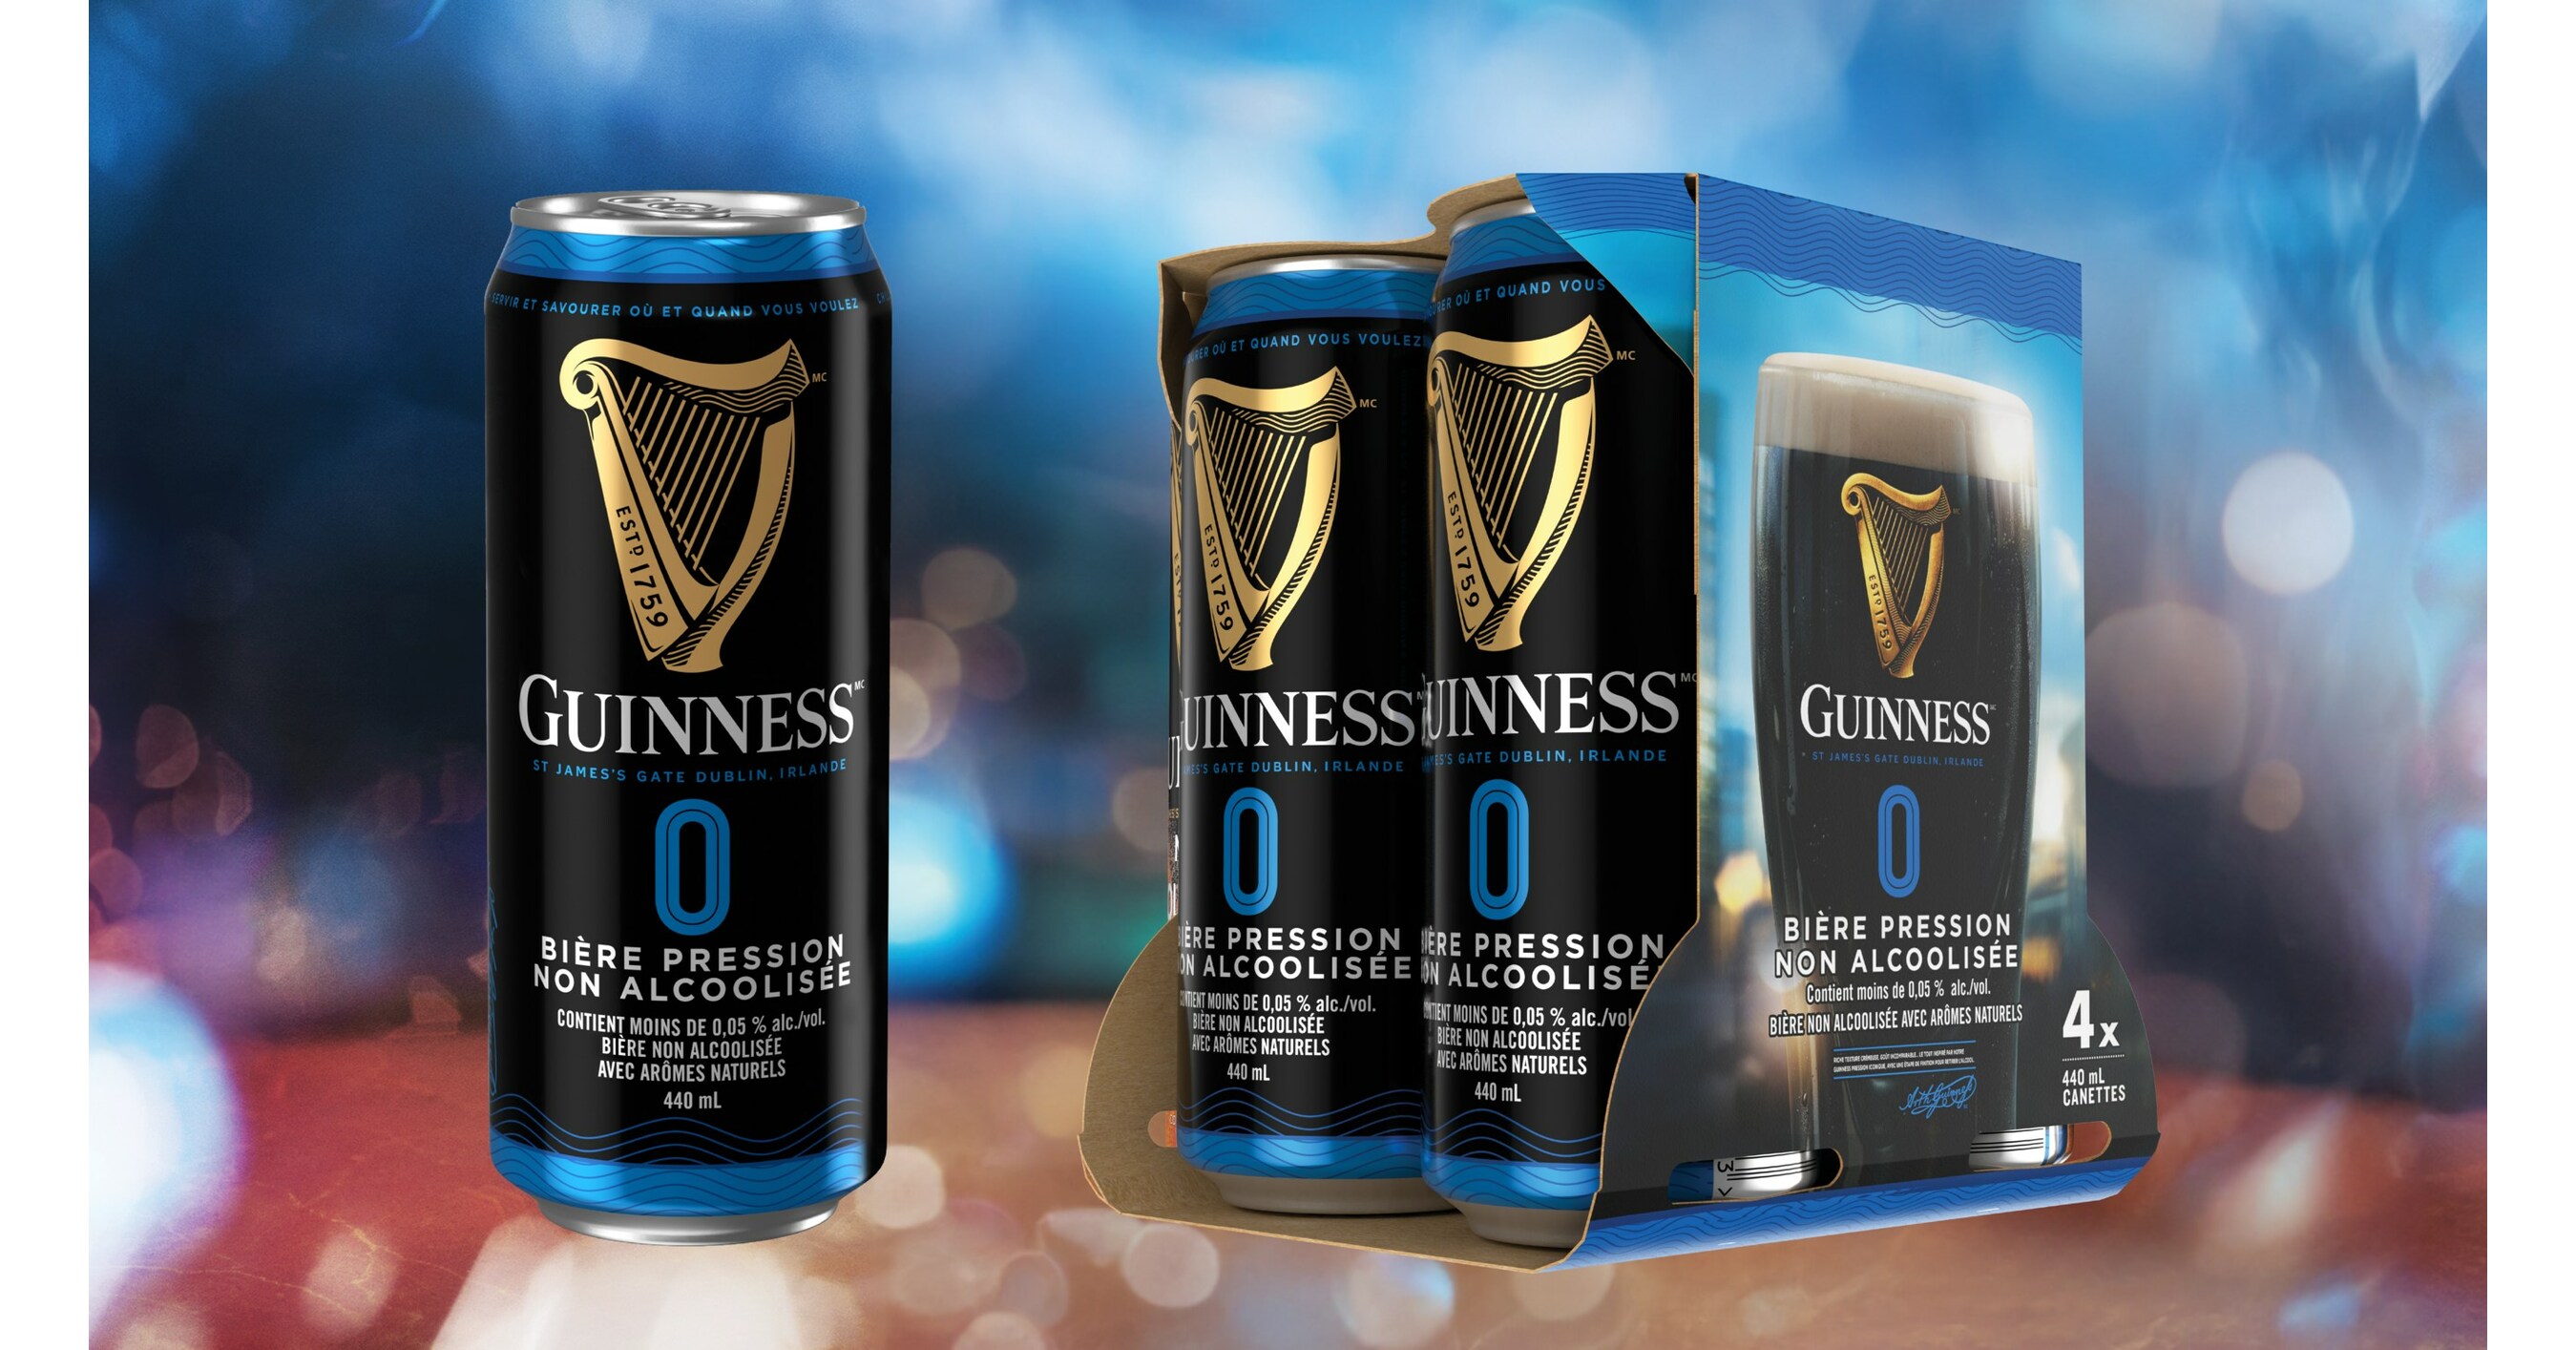 Guinness, la bière irlandaise au goût unique